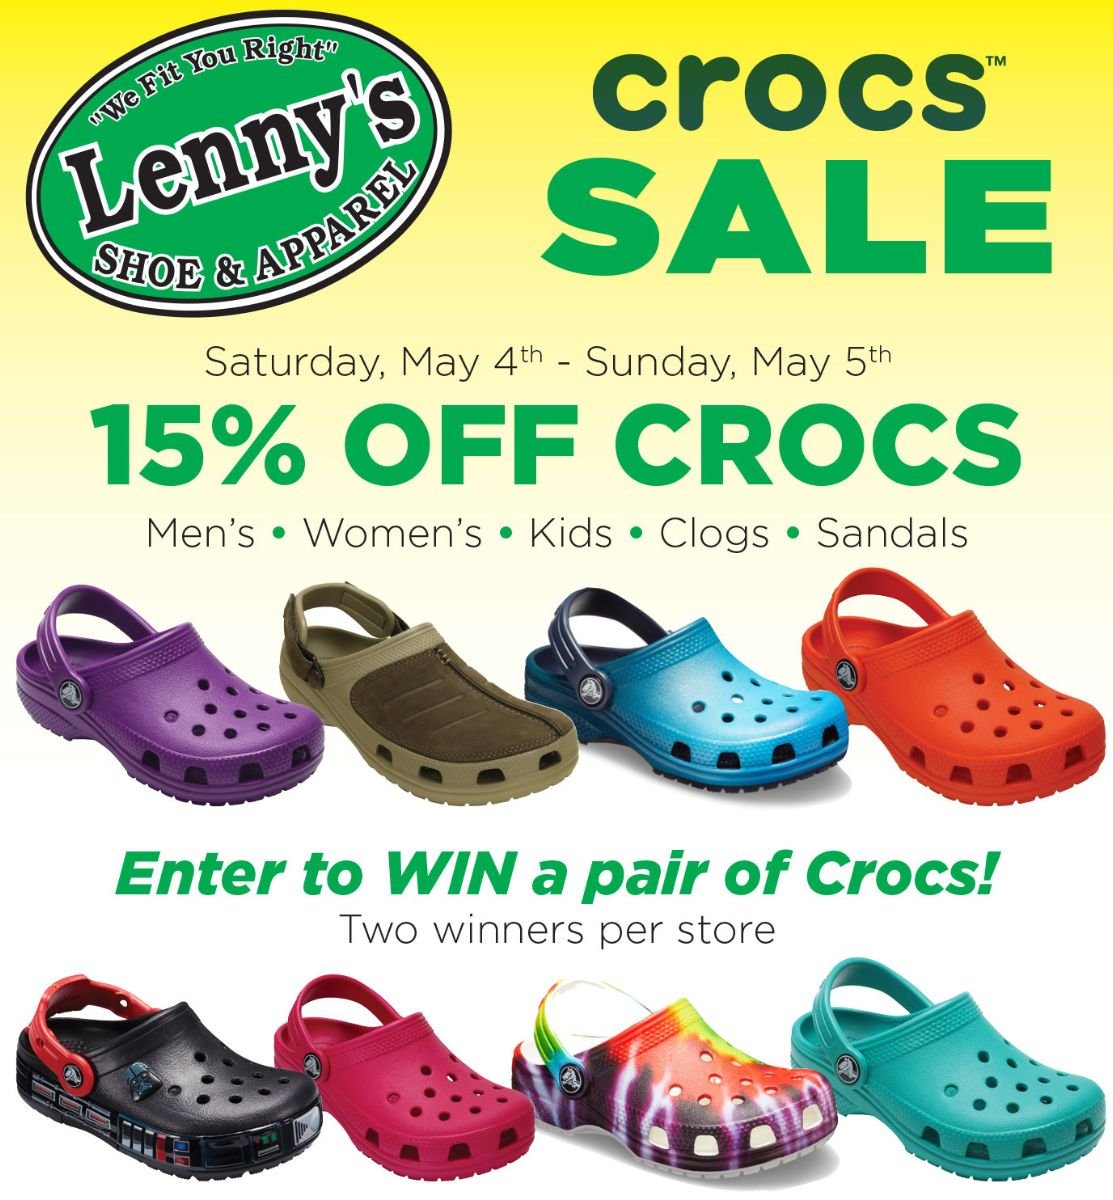 croc sandals for sale